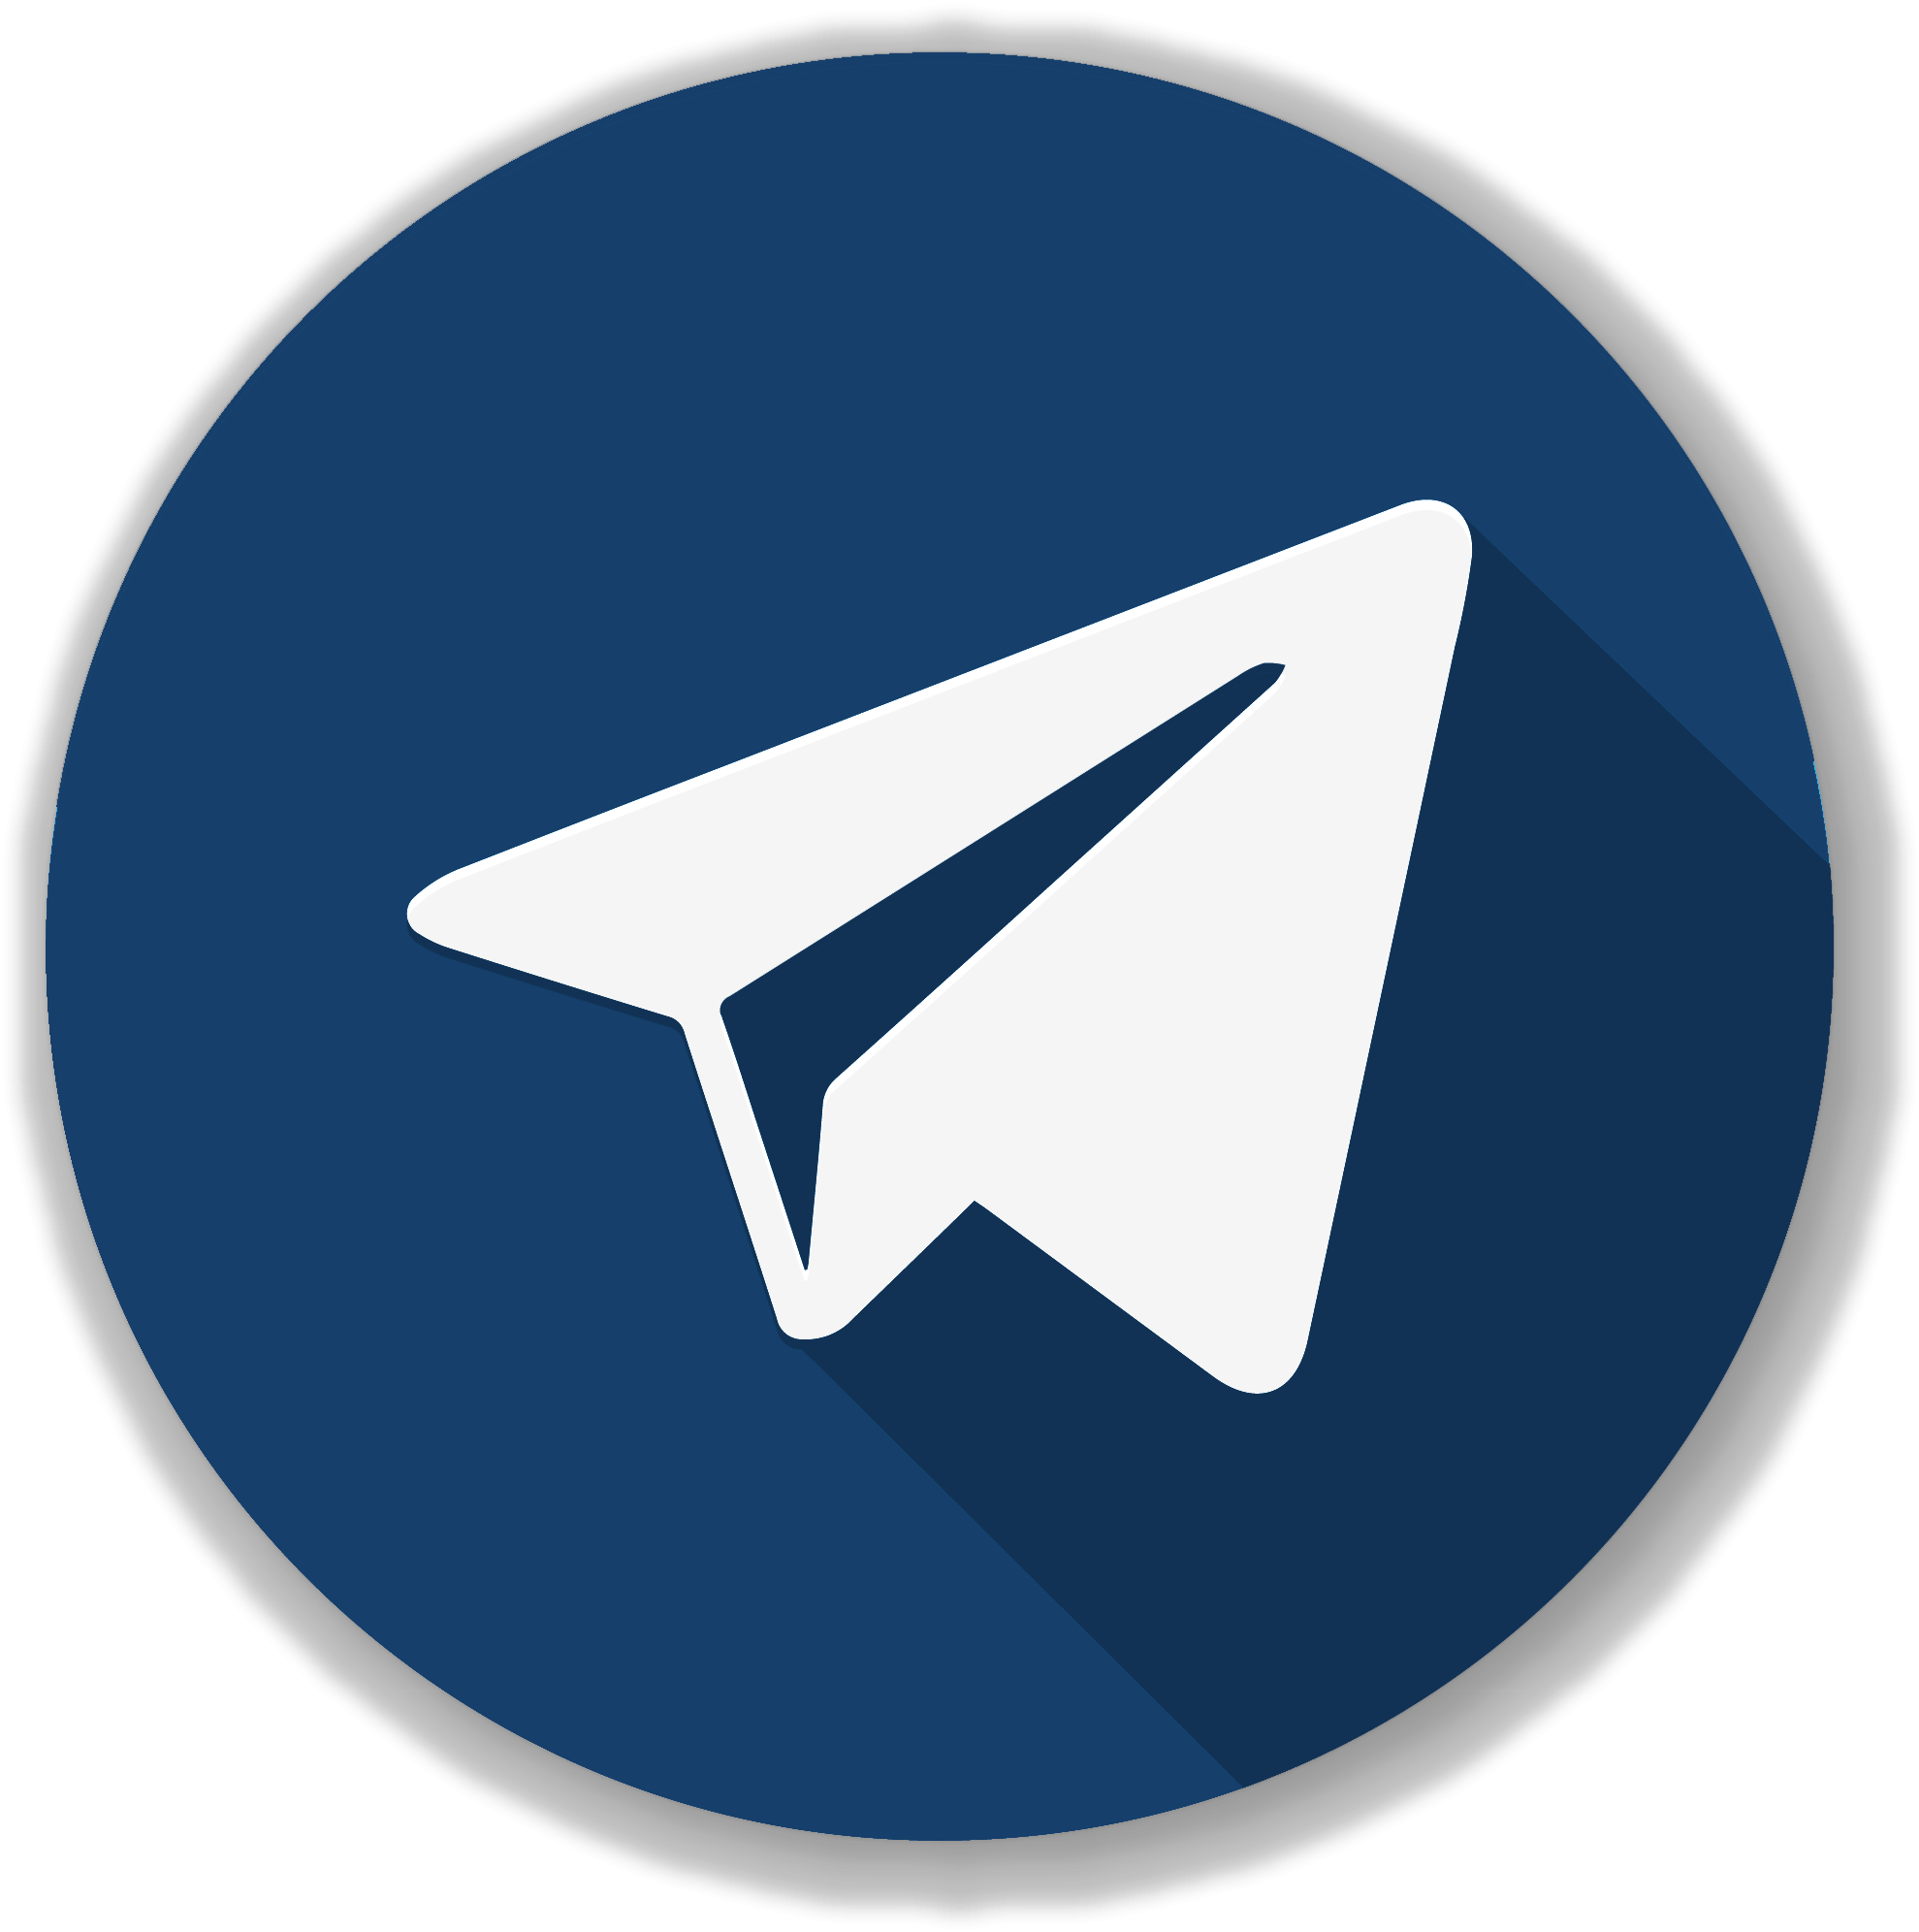 Telegram t. Значок телеграм. Значок телеграмм вектор. Телега логотип. Прозрачный значок телеграмм.